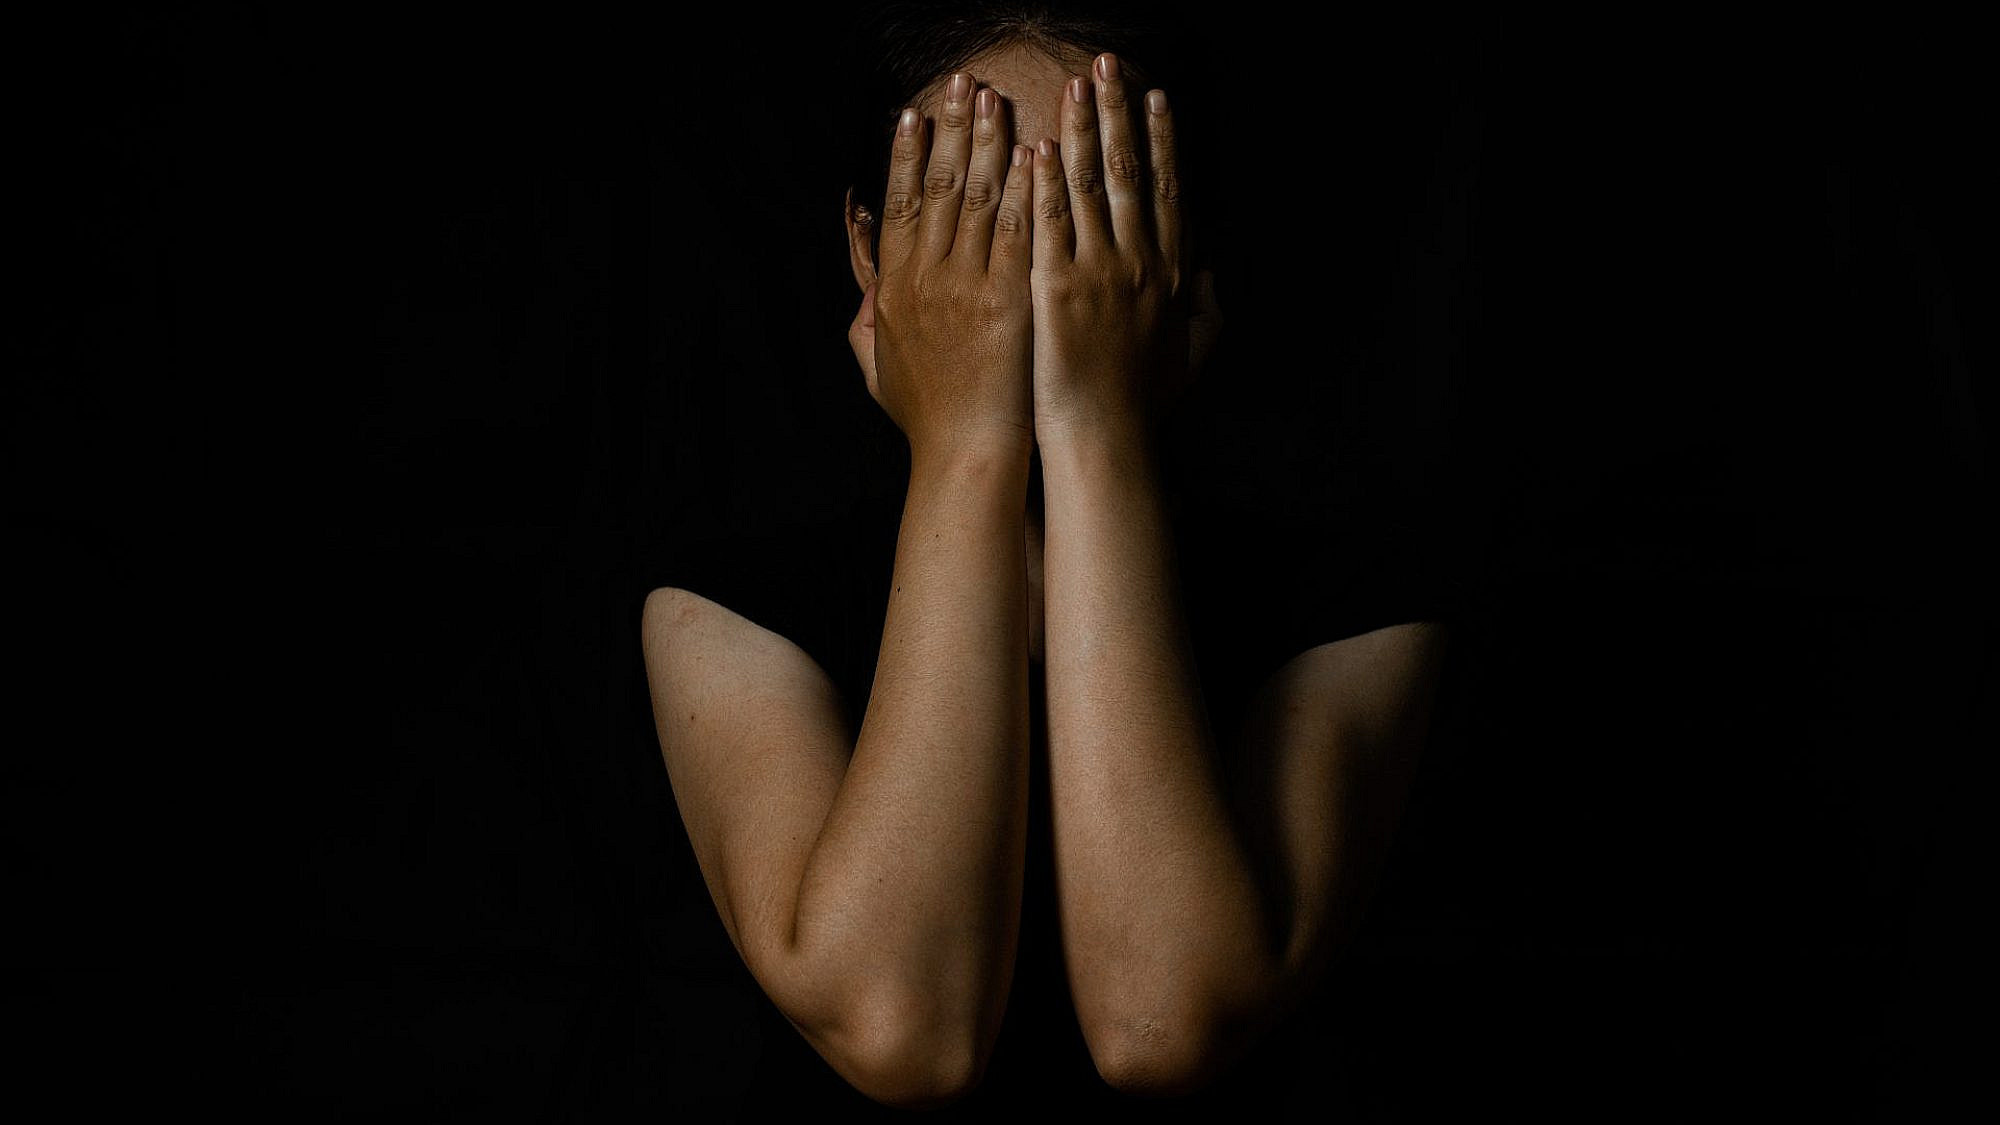 נפגעות תקיפה מינית במלחמה תספרנה את הסיפור שלהן כשיגיע הזמן - עבורן | צילום: shutterstock